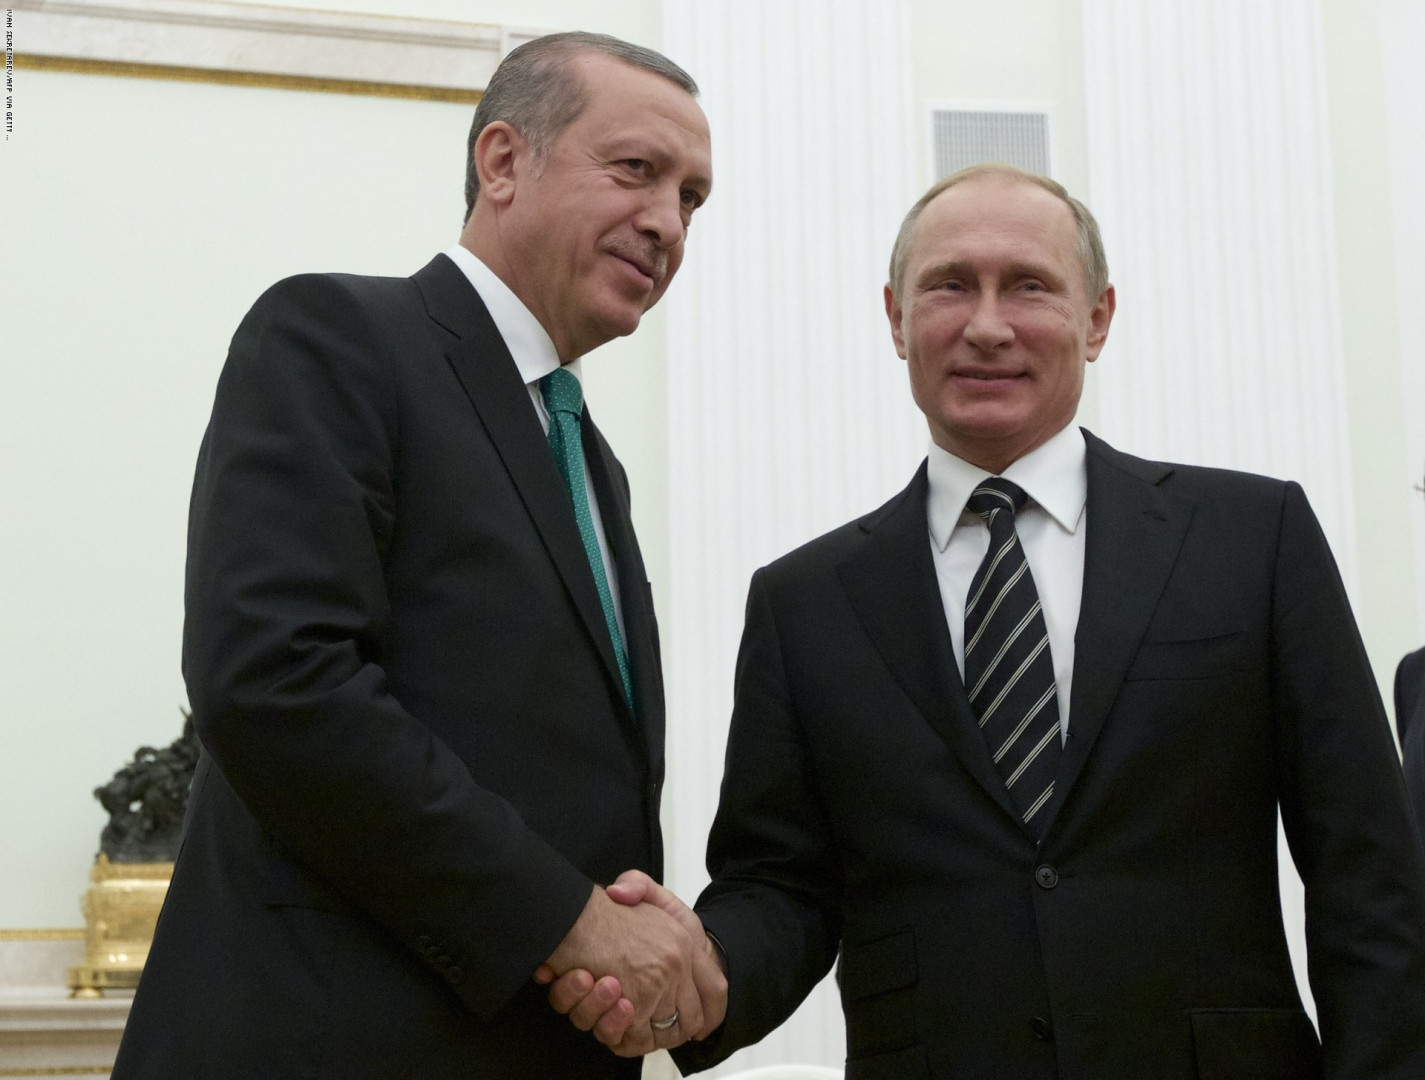 American Wall Street Journal, "Recep Tayyip Erdoğan'ın Seçimi" başlıklı bir makale yazdı. Açıklamada, yaptırımların "Türk Savunma Sanayii Müdürlüğü ve üst düzey yöneticiler hedefler aldı. UFK'ların SSB ile anlaşmadan önce iki kez düşünmesi gerekecek" başlıklı makaleyi gözden geçirdiği belirtildi. Rusya'dan S-400'e yaptırım uygulama kararı nedeniyle Türkiye, ABD tarafından teslim alındıktan sonra alınmış ve WSJ yayın kurulu imzasını taşıyan makaleler yayımlanmıştır. Ekonomideki değişikliklere atıfta bulunarak, "Türkiye ekonomisi geçtiğimiz ay Erdoğan hükümeti yönetiminde ekonomik ekibi değiştirmeye zorlandı. Ancak ülkedeki refah düzeyine ulaşmanın yolu Batı ile ve özellikle Avrupa Birliği ile yakın entegrasyondan geçiyor." Bu tamamen Erdoğan'a kalmış. Ankara'nın NATO müttefikleri ile ilişkilerini güçlendirmek ya da Rusya gibi bir ülke ile ilişkilerini arttırmak ekonomik açıdan hiçbir kazanç sağlamaz. "